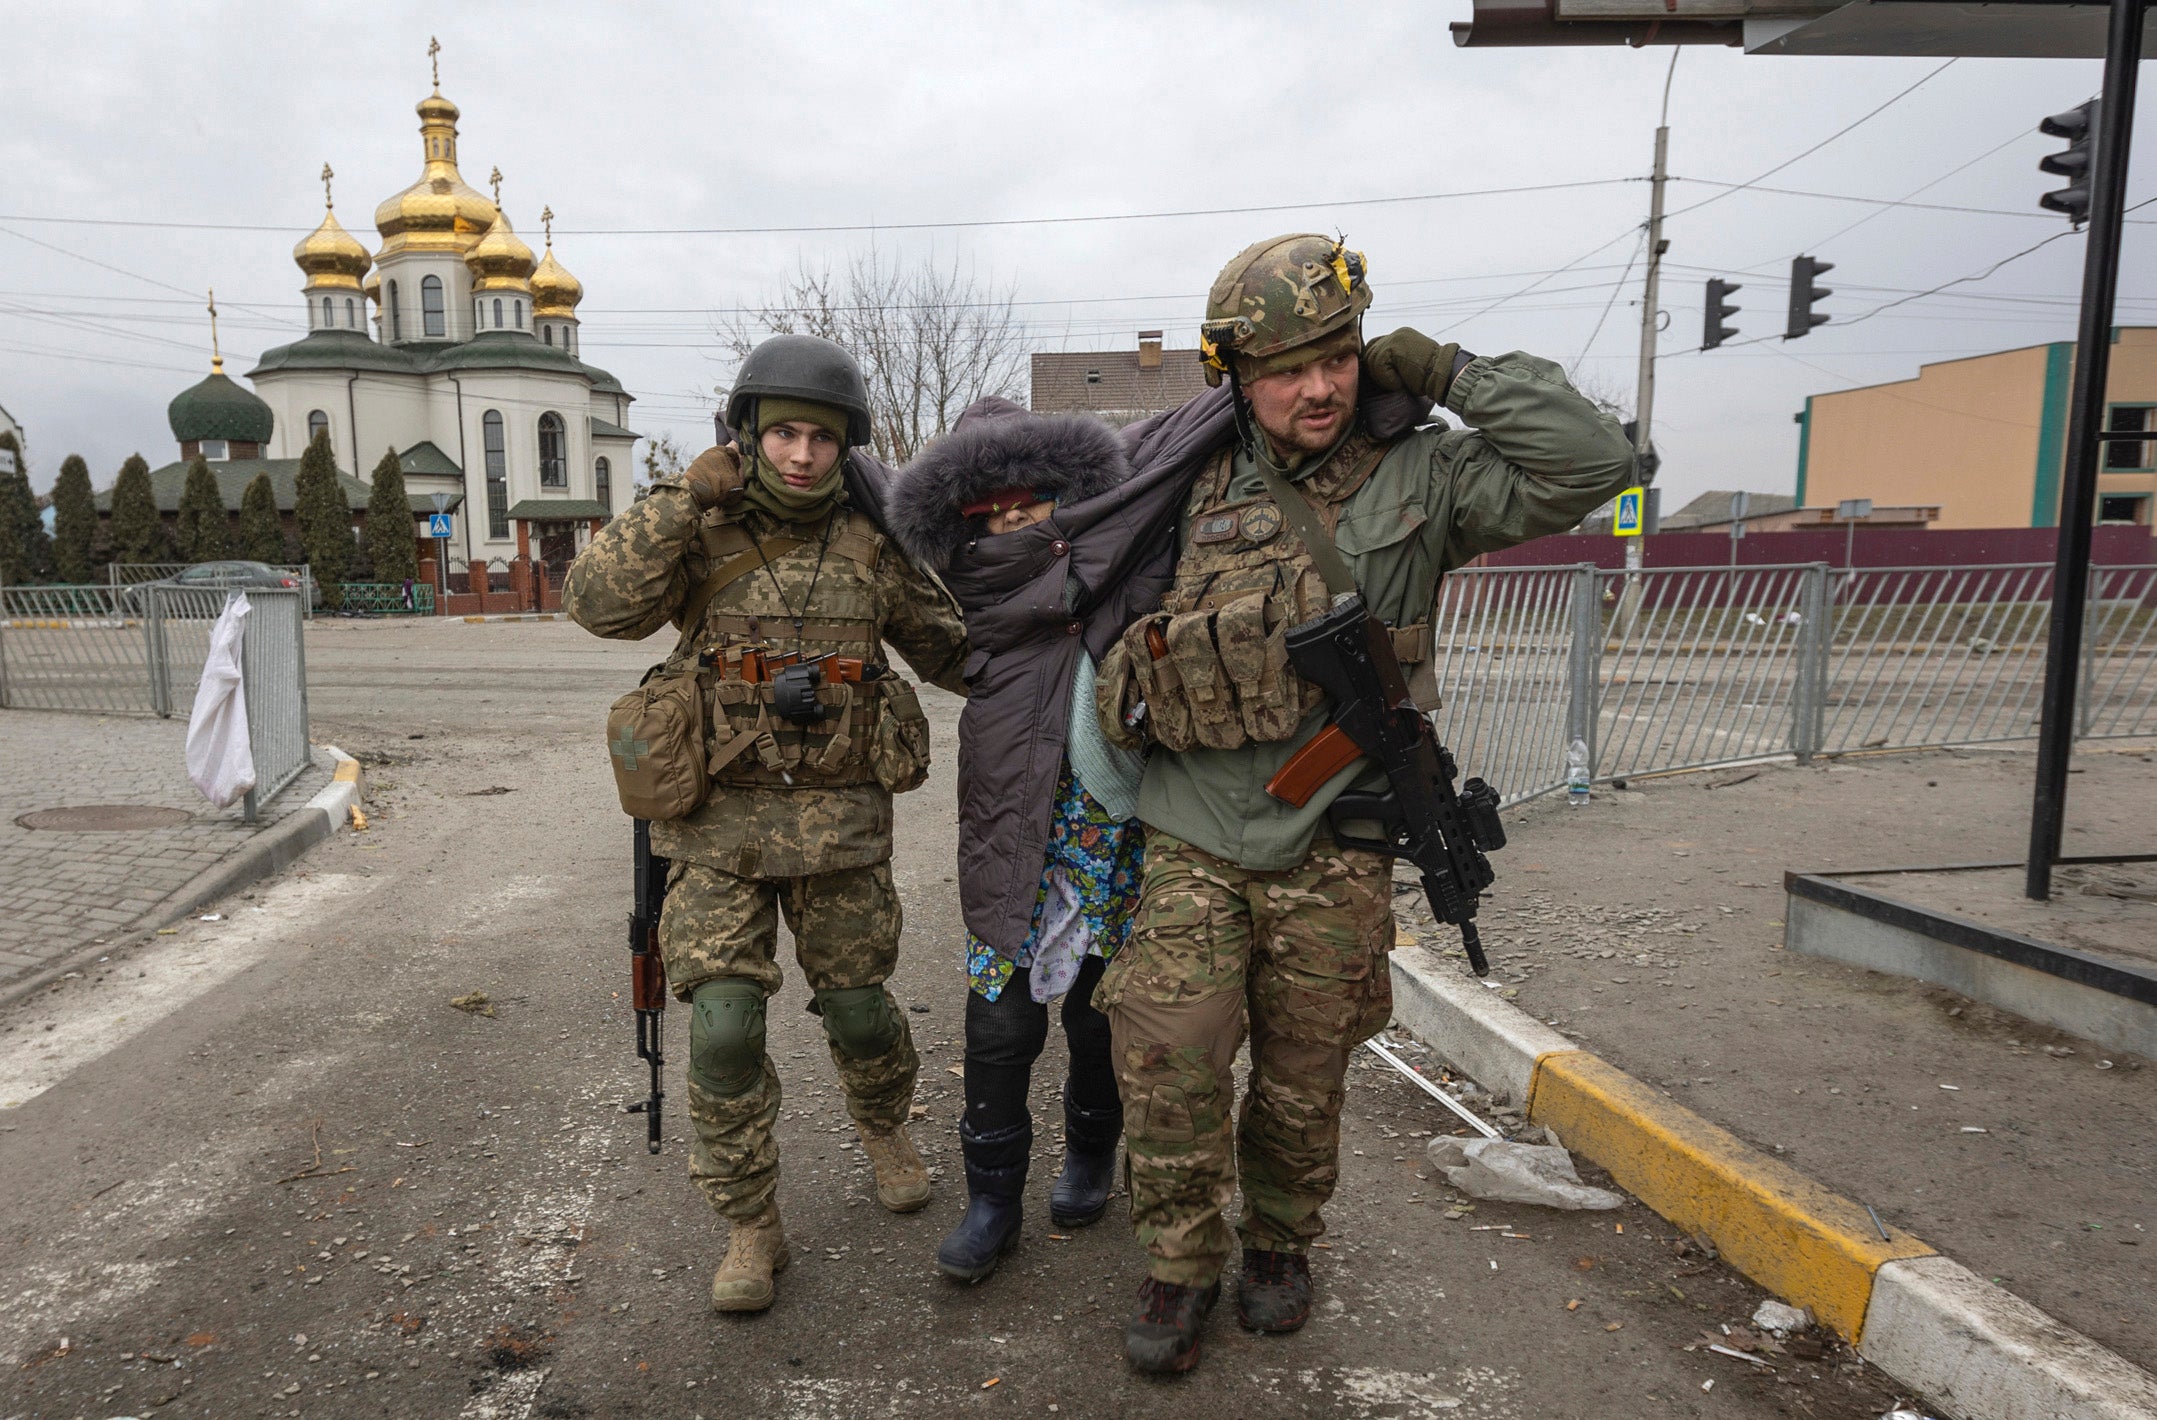 Ces deux soldats ukrainiens aidaient une femme ayant du mal à marcher, après une attaque russe à Irpin, dans le nord de l’Ukraine, le 6 mars 2022. L’attaque a été menée à un carrefour situé près de l’église orthodoxe ukrainienne Saint-Georges, alors que des civils tentaient de fuir la ville.